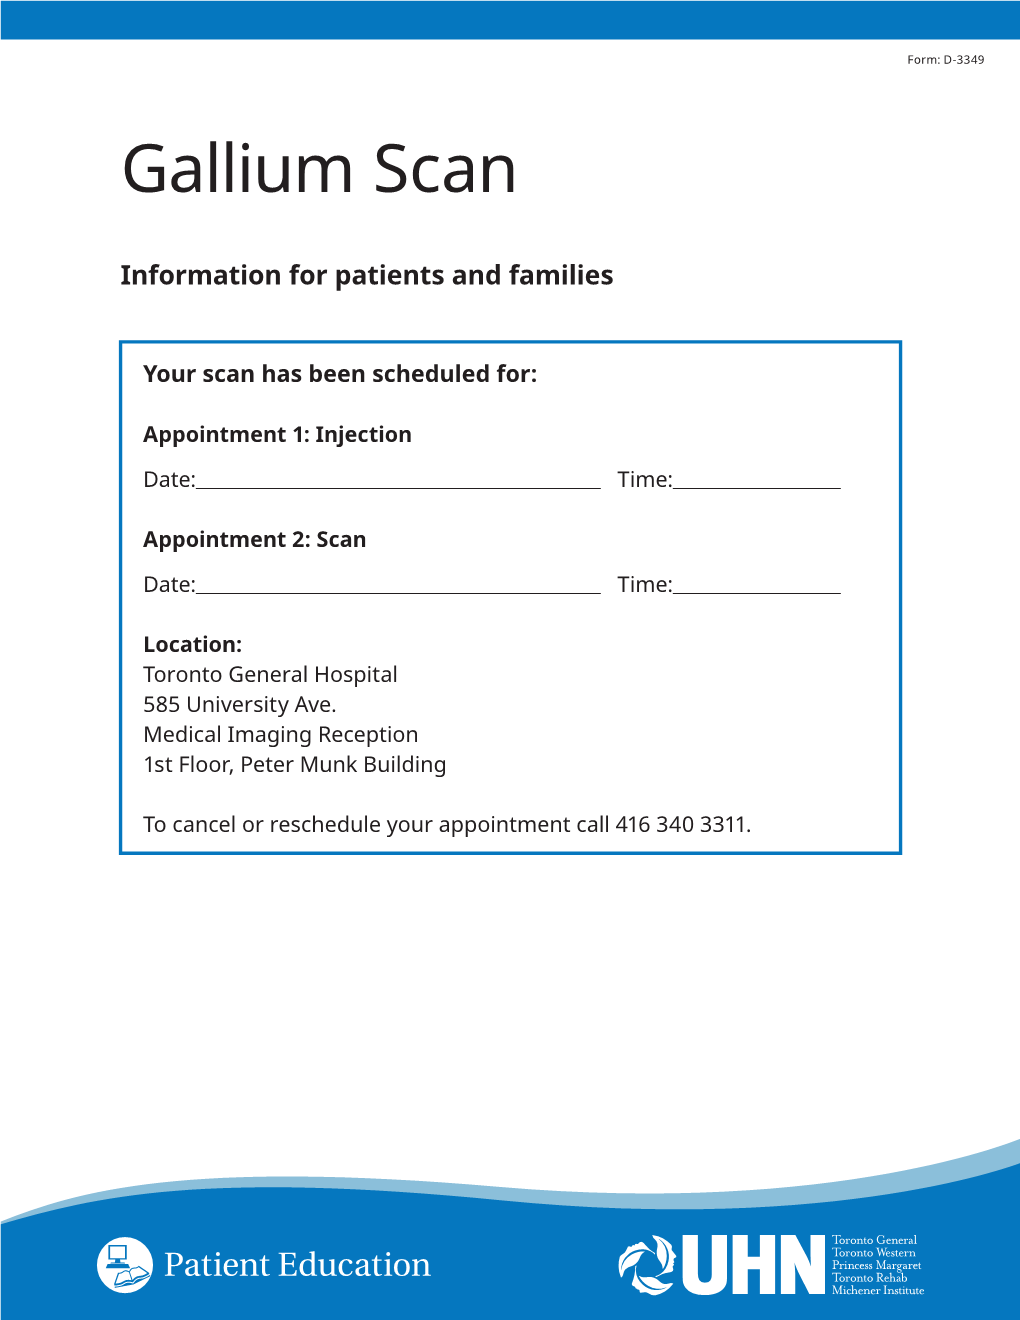 Gallium Scan